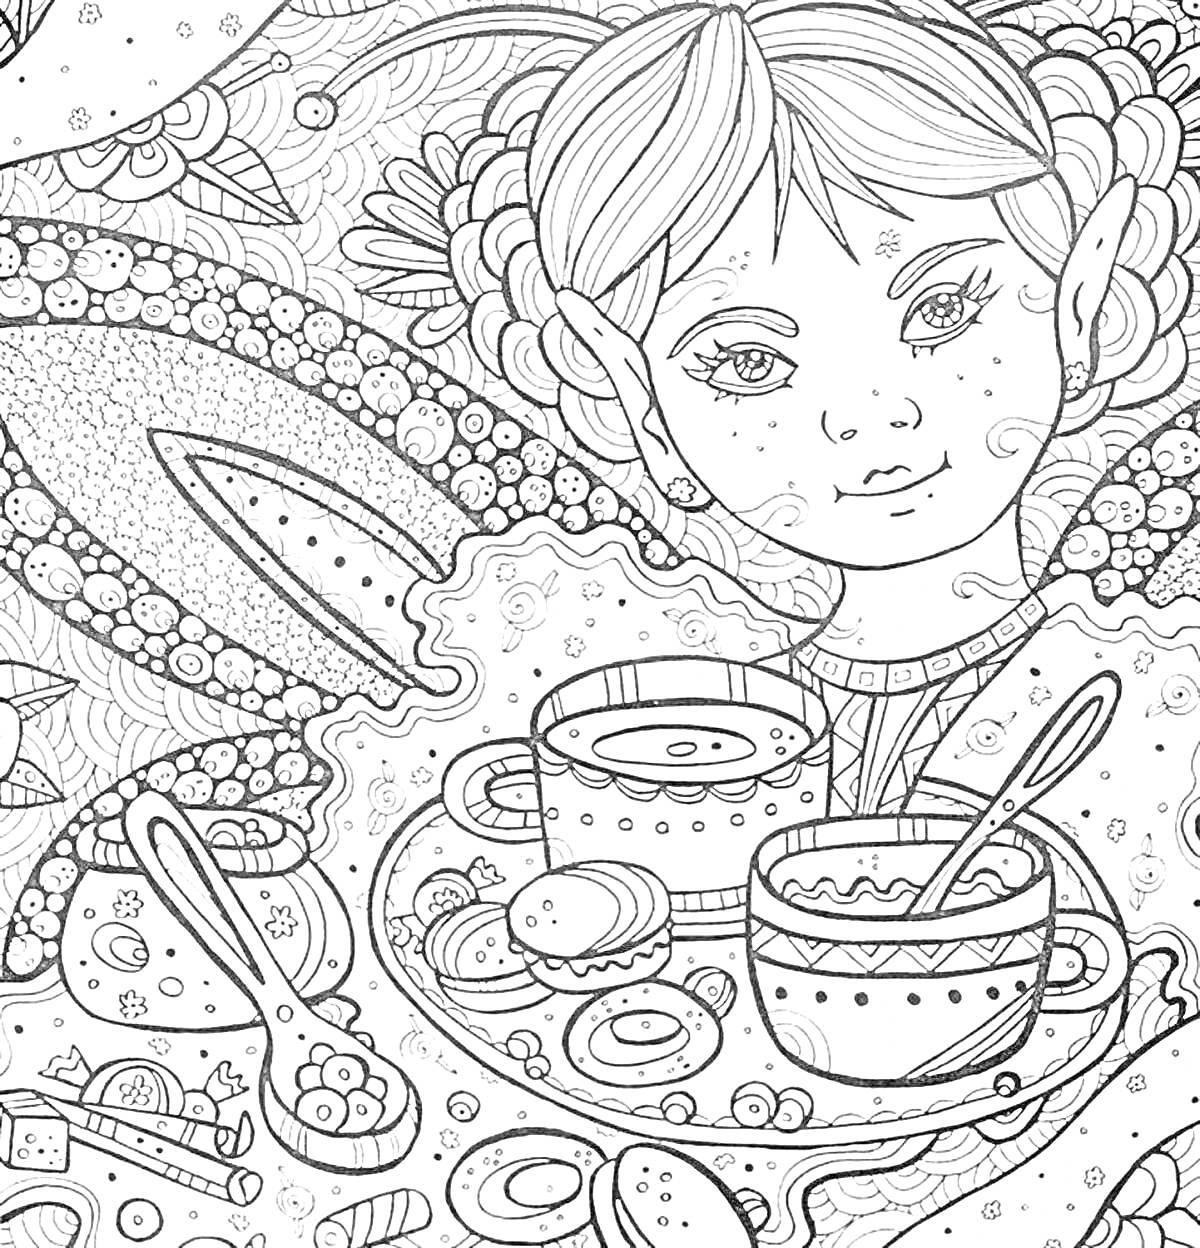 Раскраска Девочка с эльфийскими ушами за столом с чашками, ложками и угощениями на фоне узоров